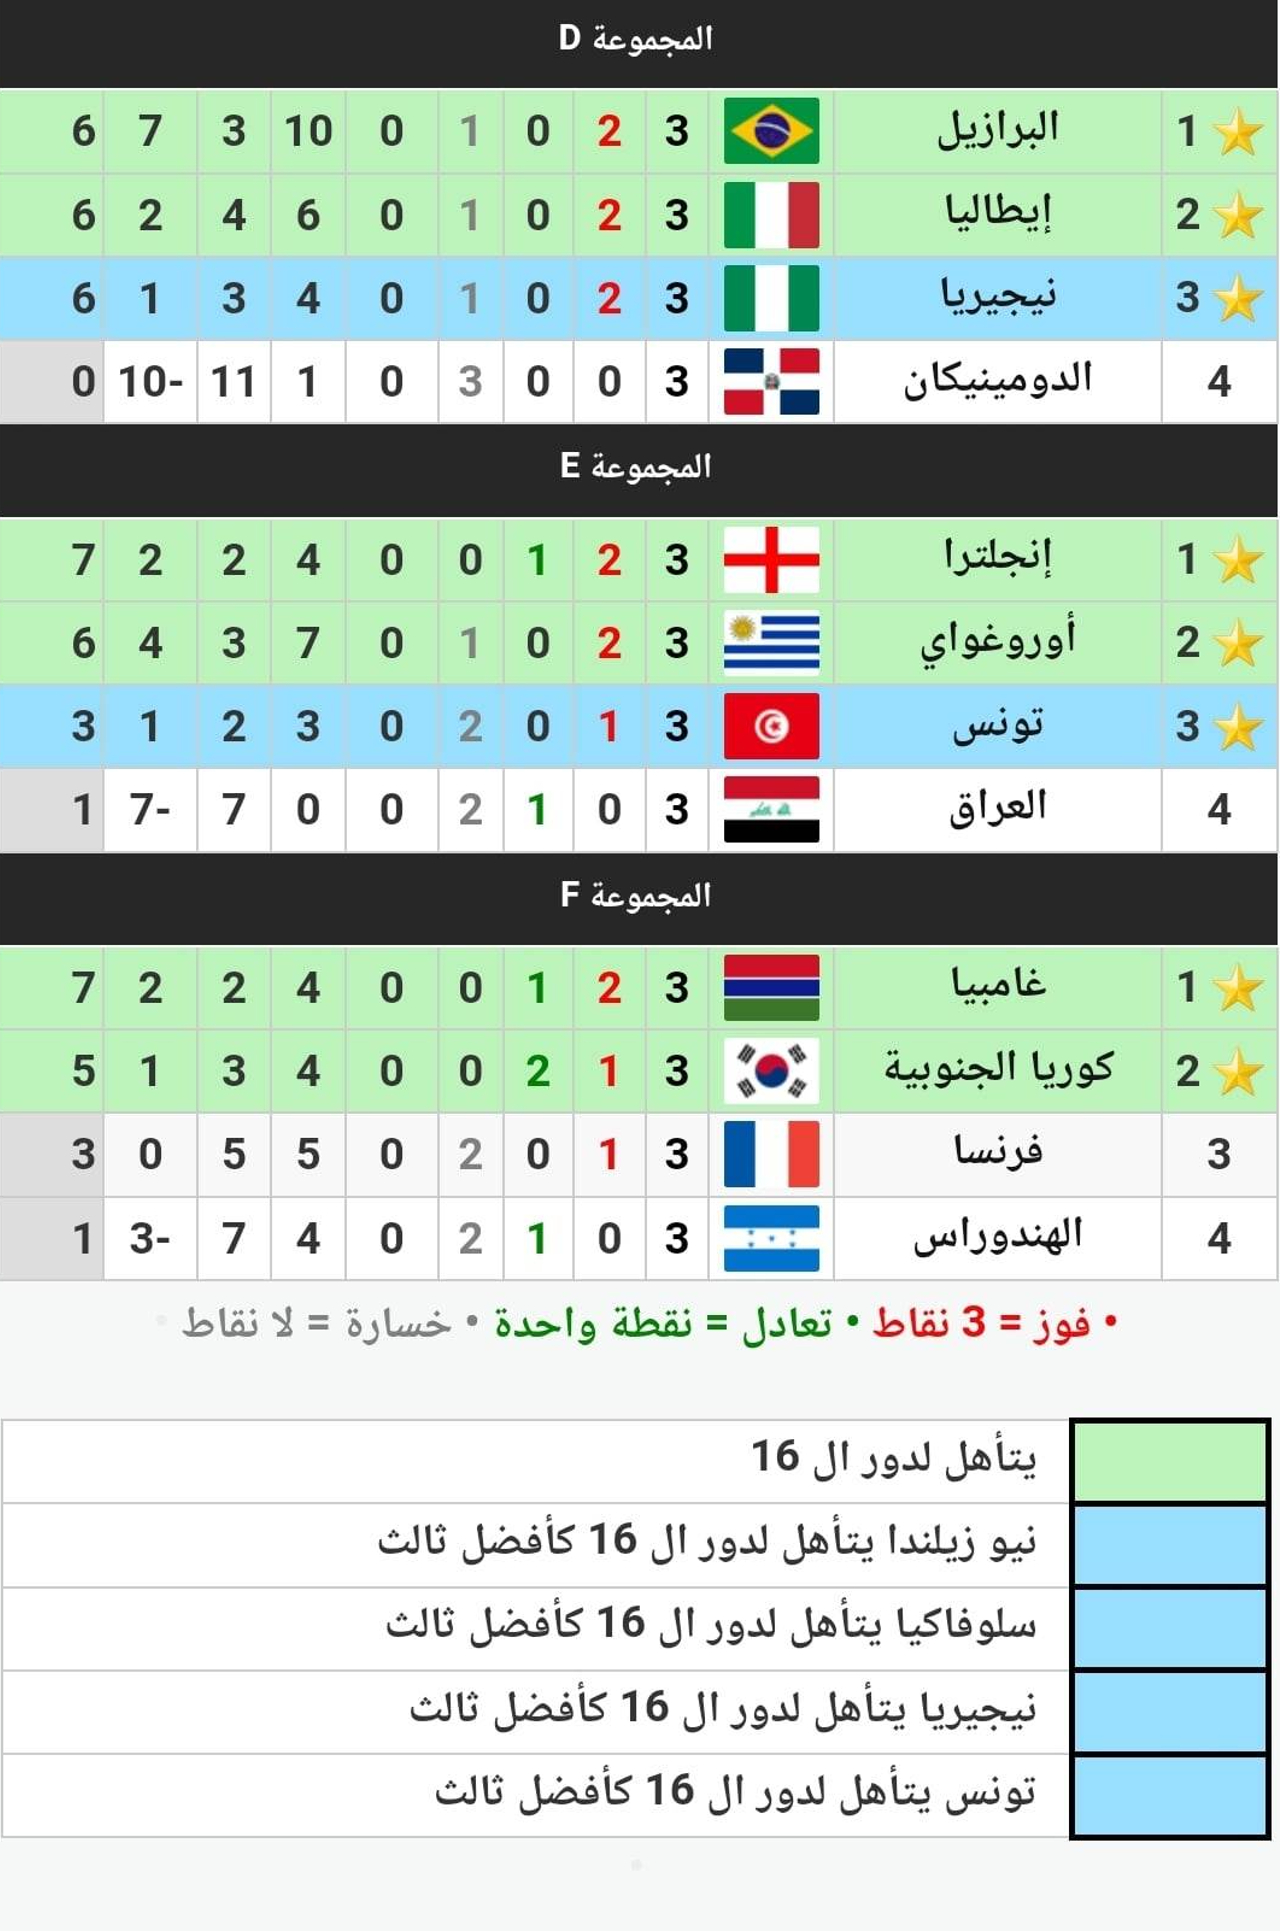 الترتيب النهائي للمجموعات والمتأهلين إلى دور الـ16 في كأس العالم للشباب 2023 عقب انتهاء مباريات الدور الأول